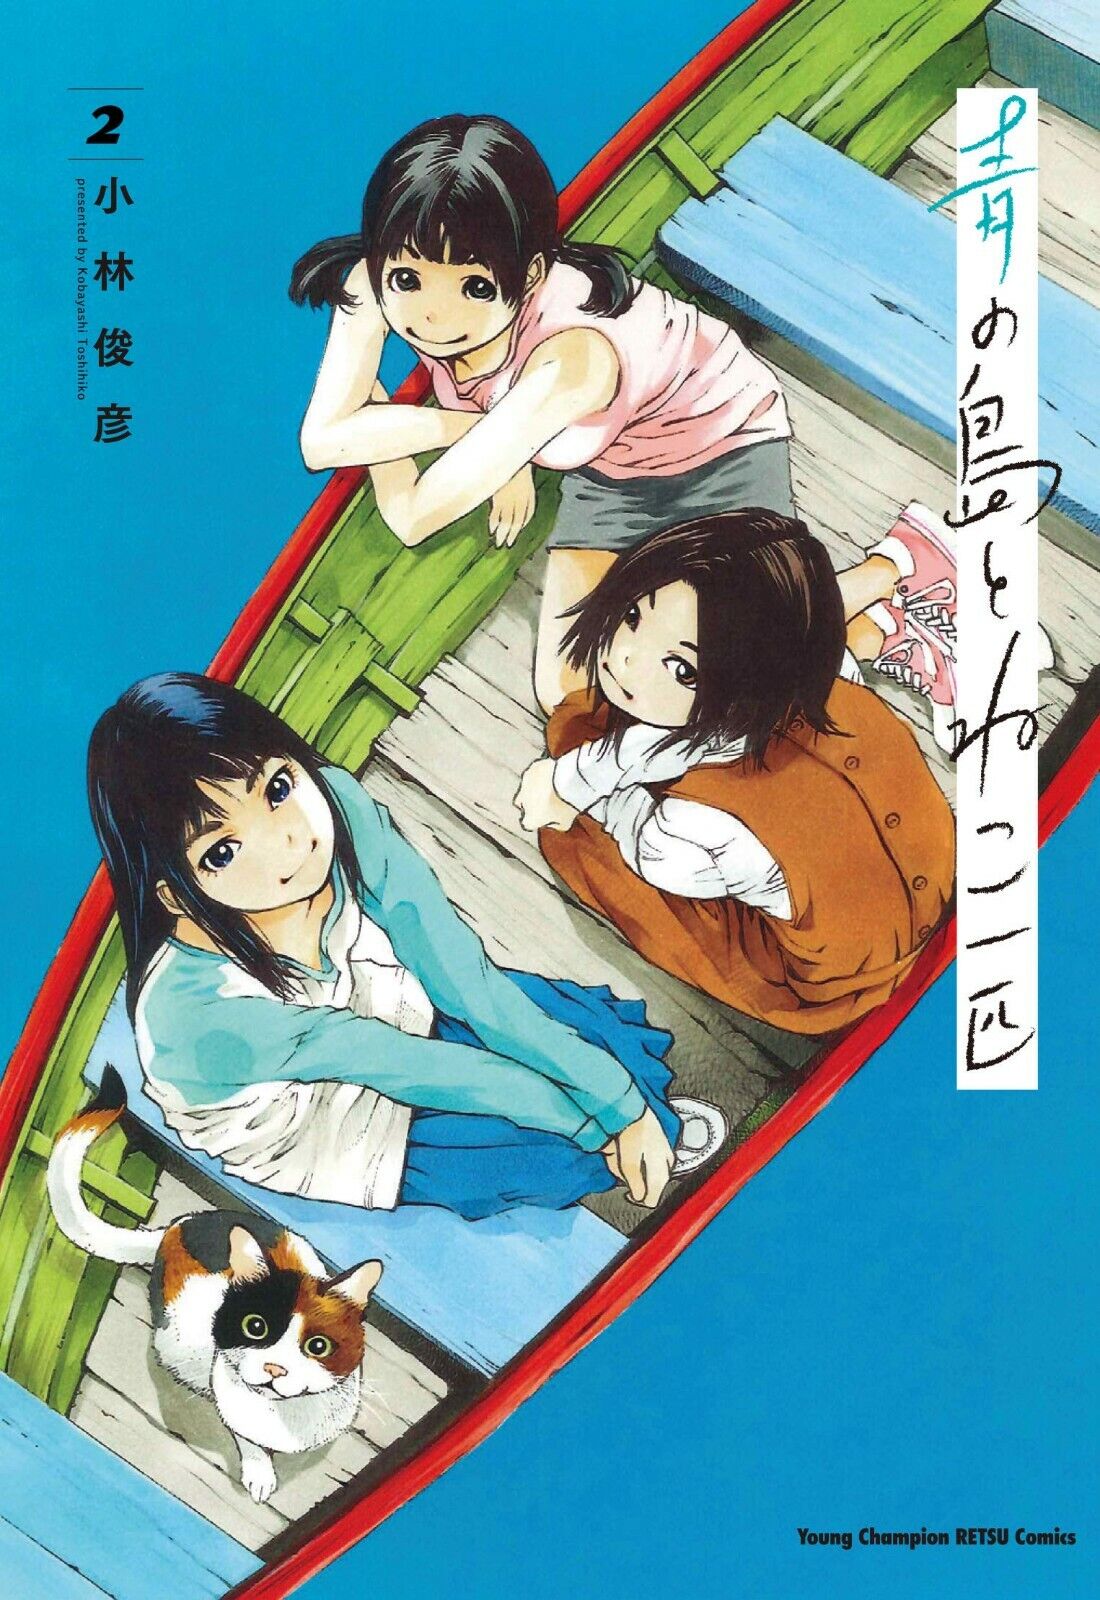 Japanese Manga Comic Book AO NO SHIMA TO NEKO IPPIKI 青の島とねこ一匹 vol. 1-6 set